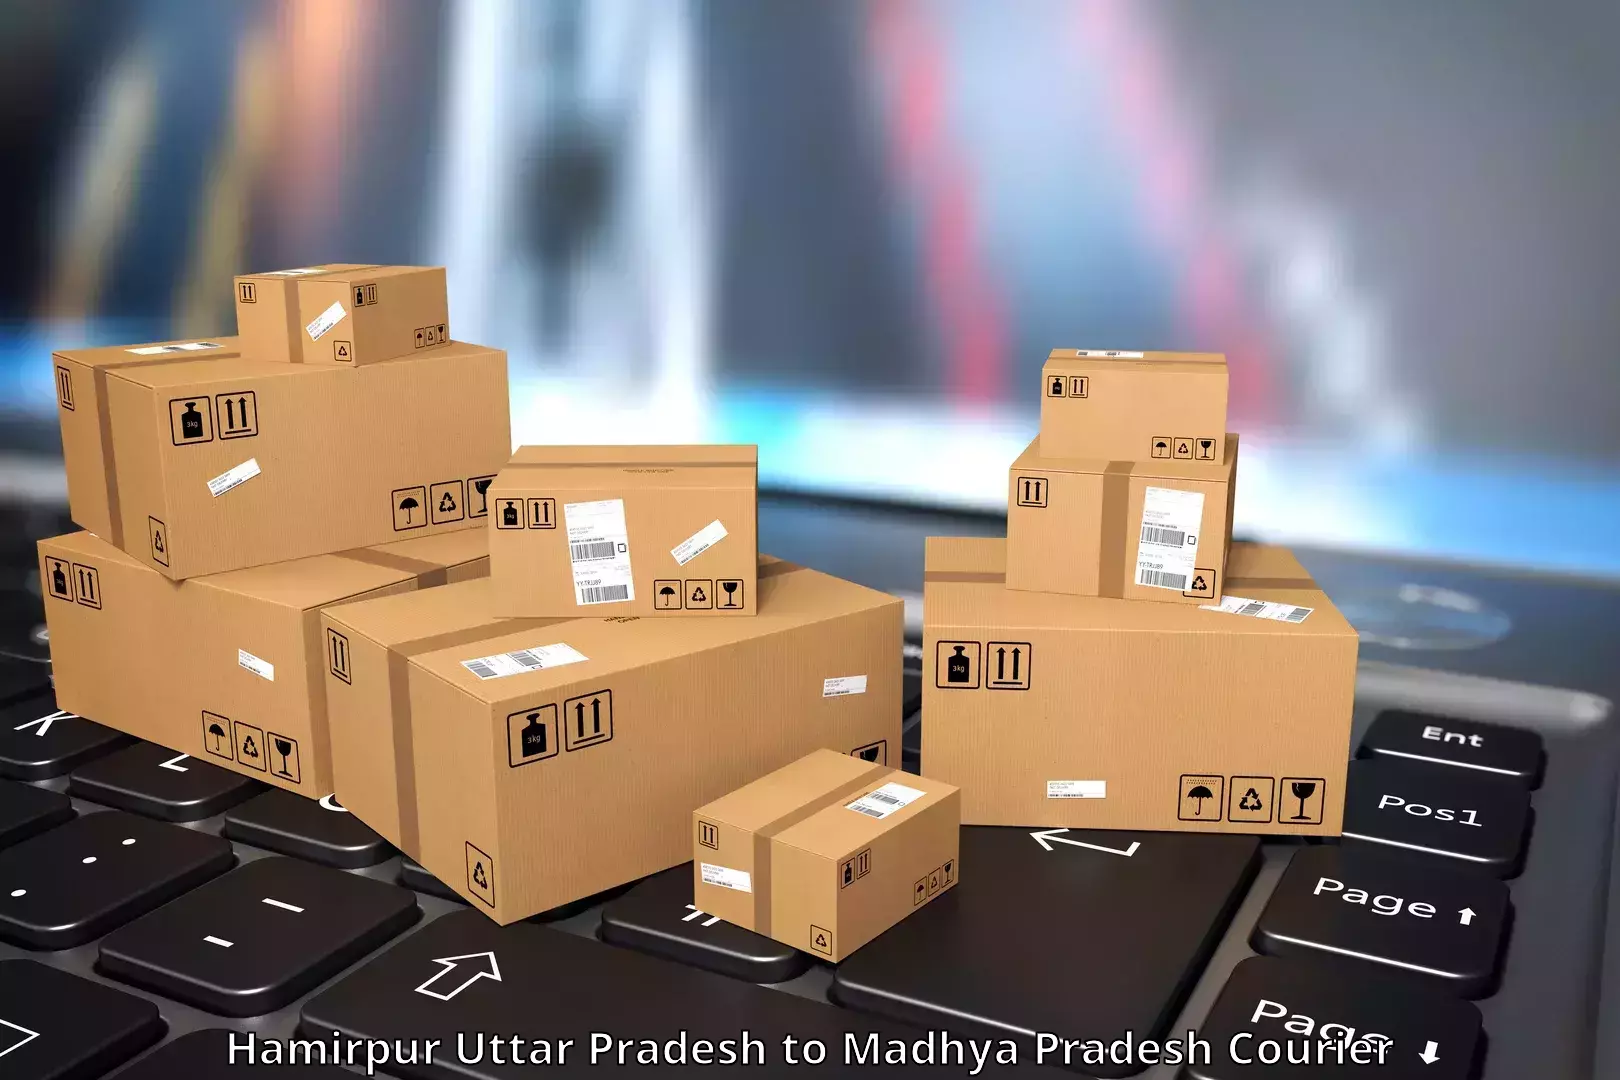 Affordable parcel service Hamirpur Uttar Pradesh to Amanganj